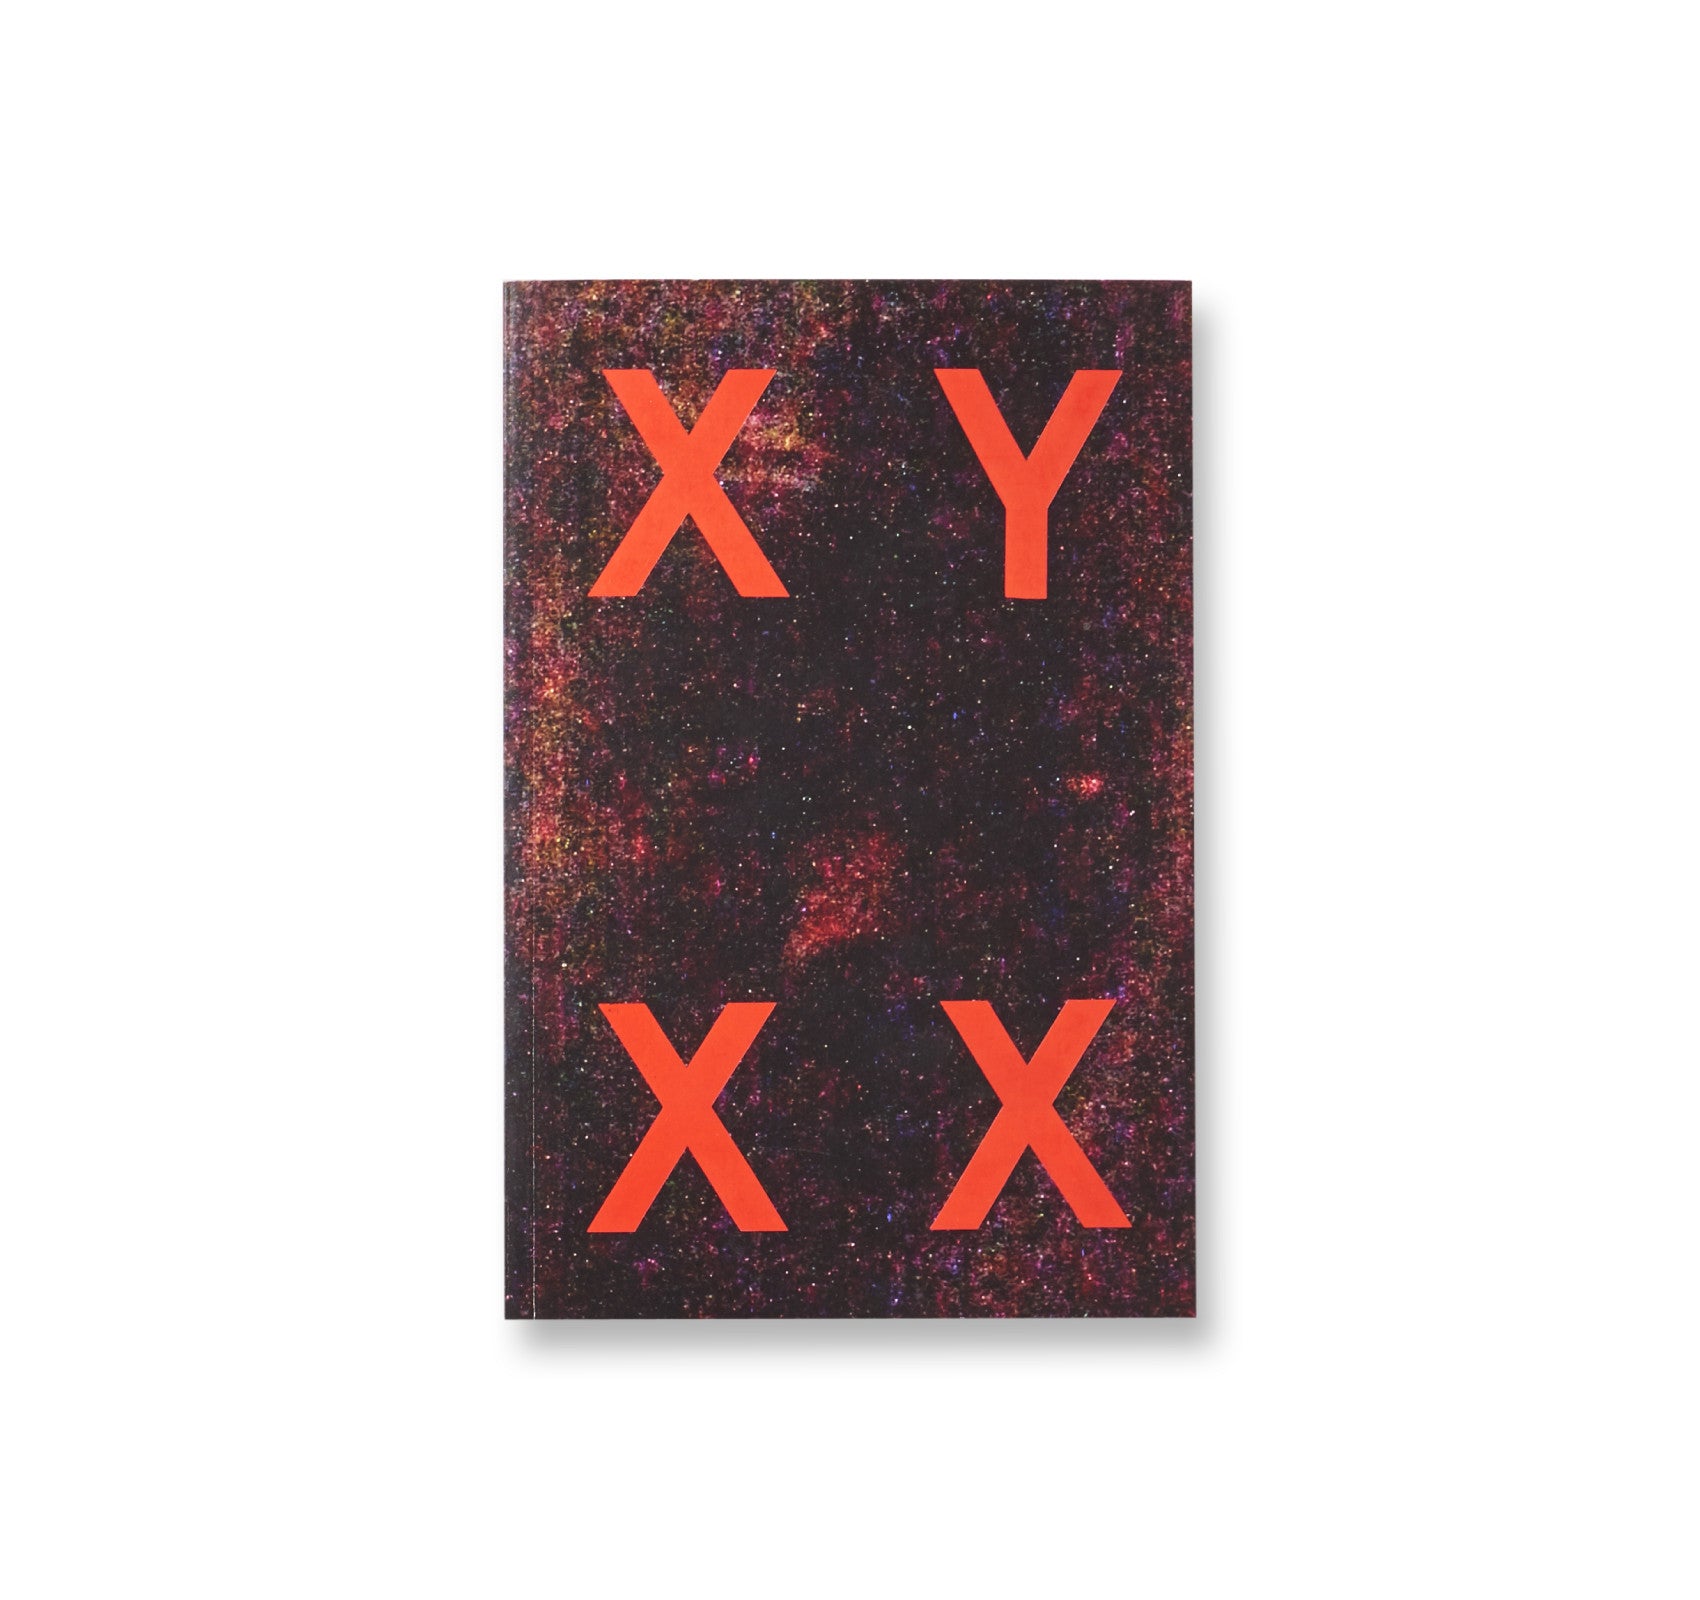 XY XX by Fosi Vegue